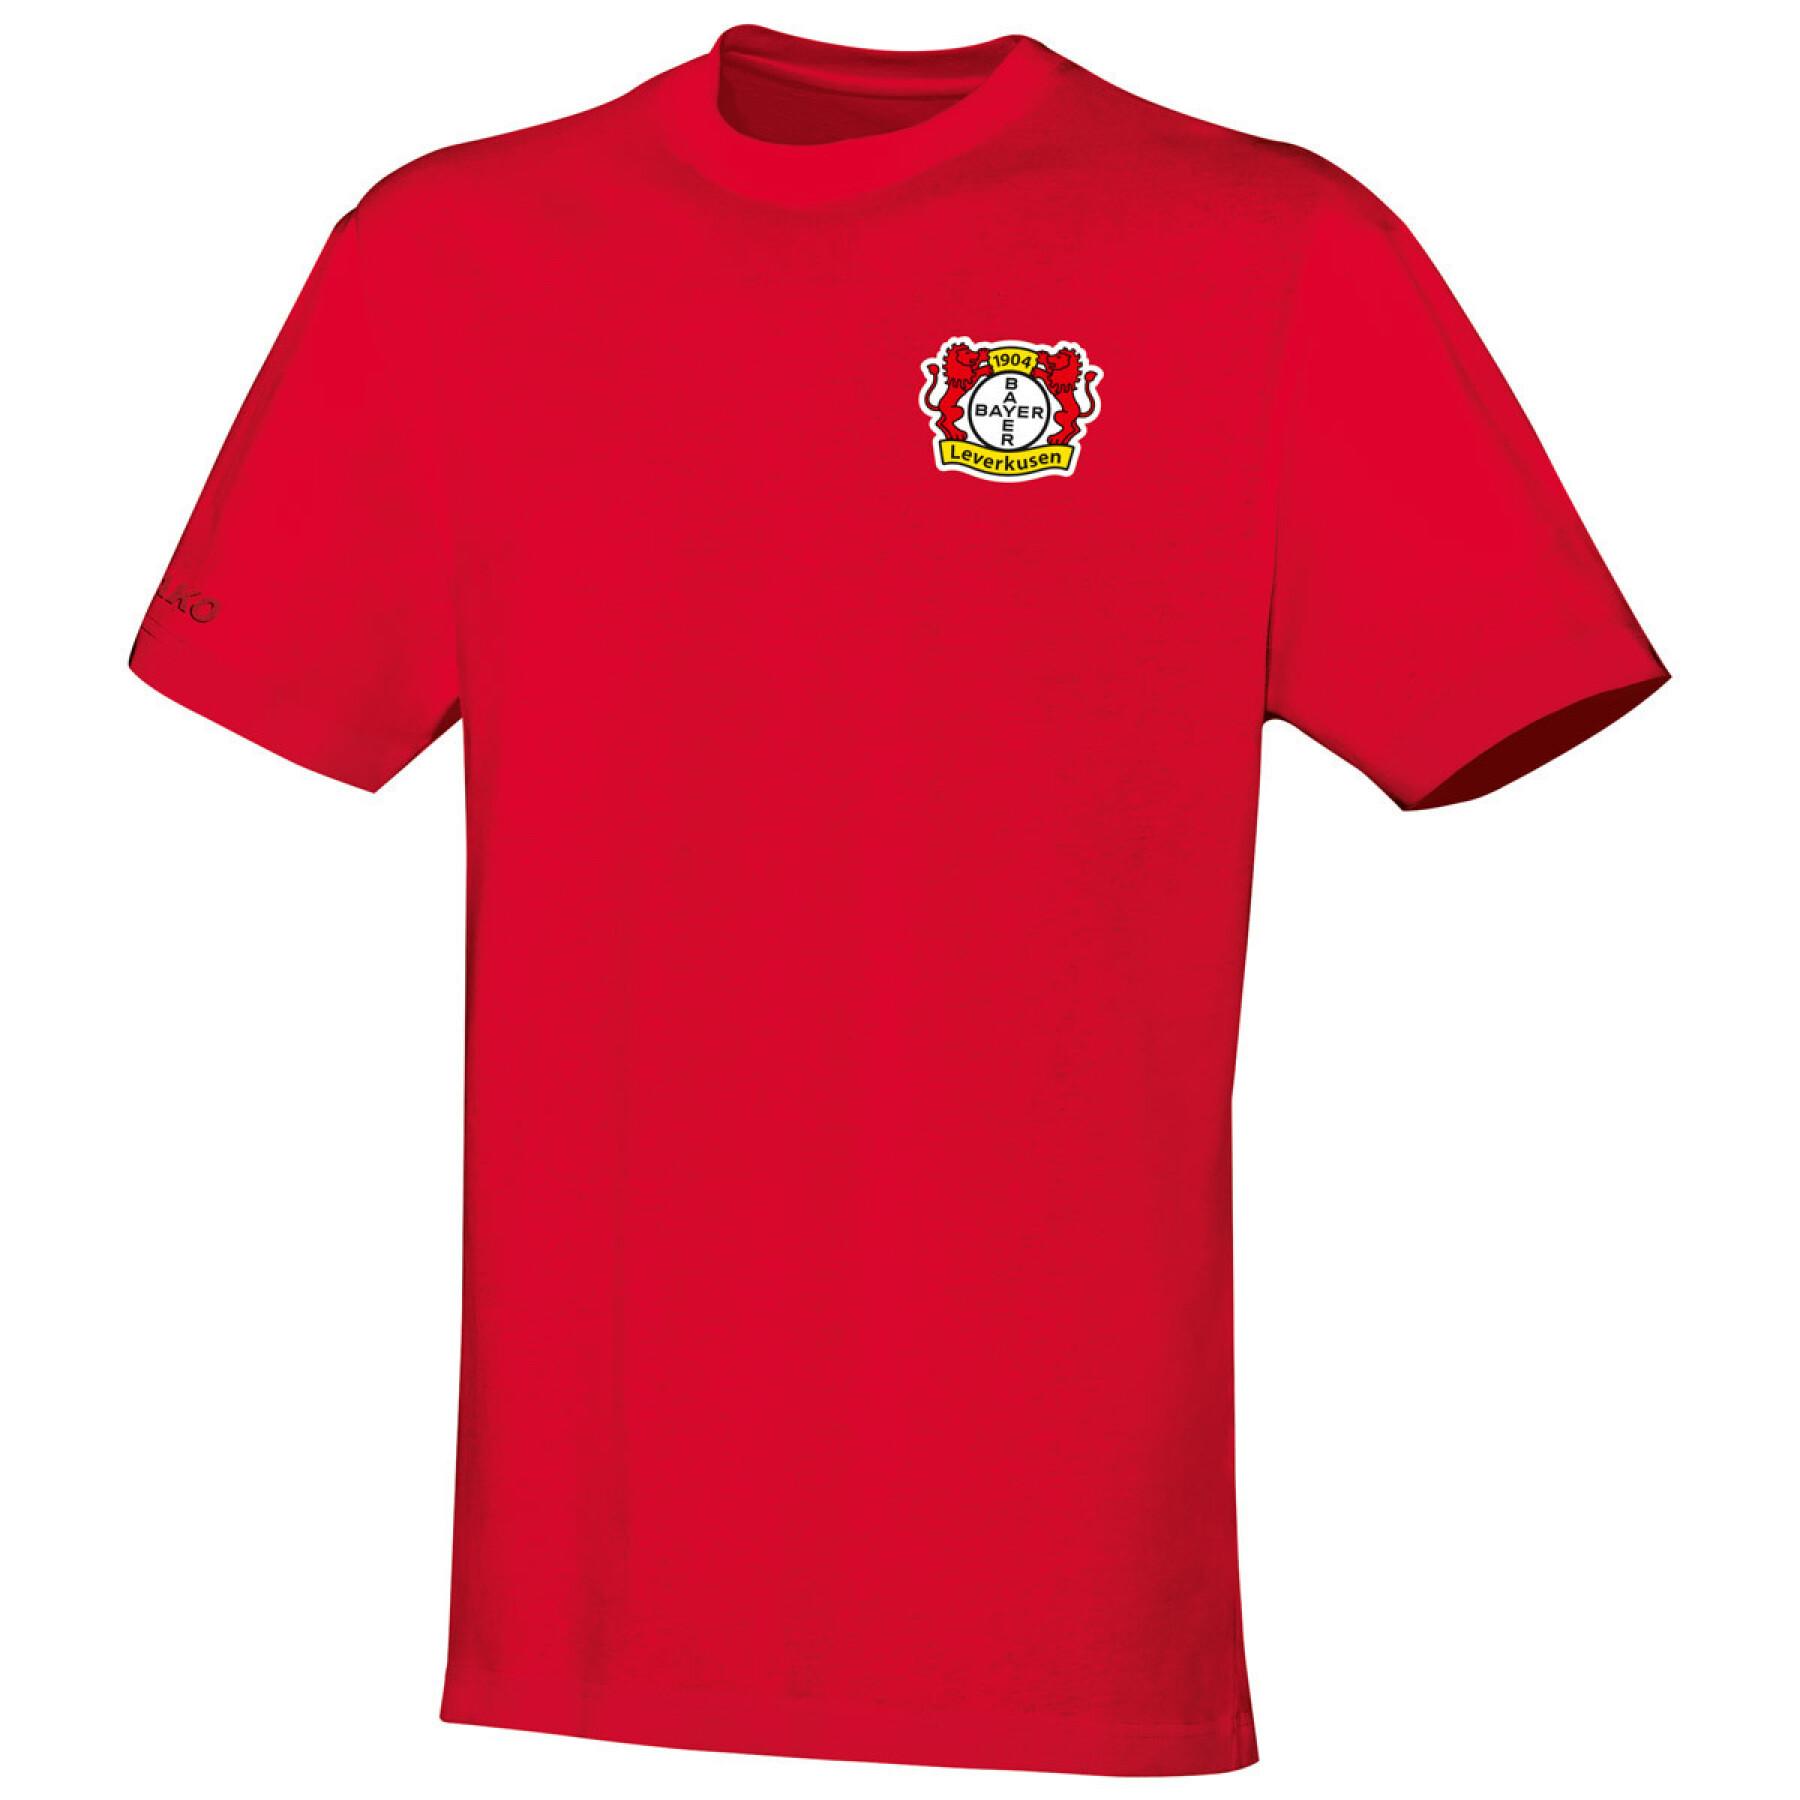 Camiseta feminina Bayer Leverkusen Team 2019/20